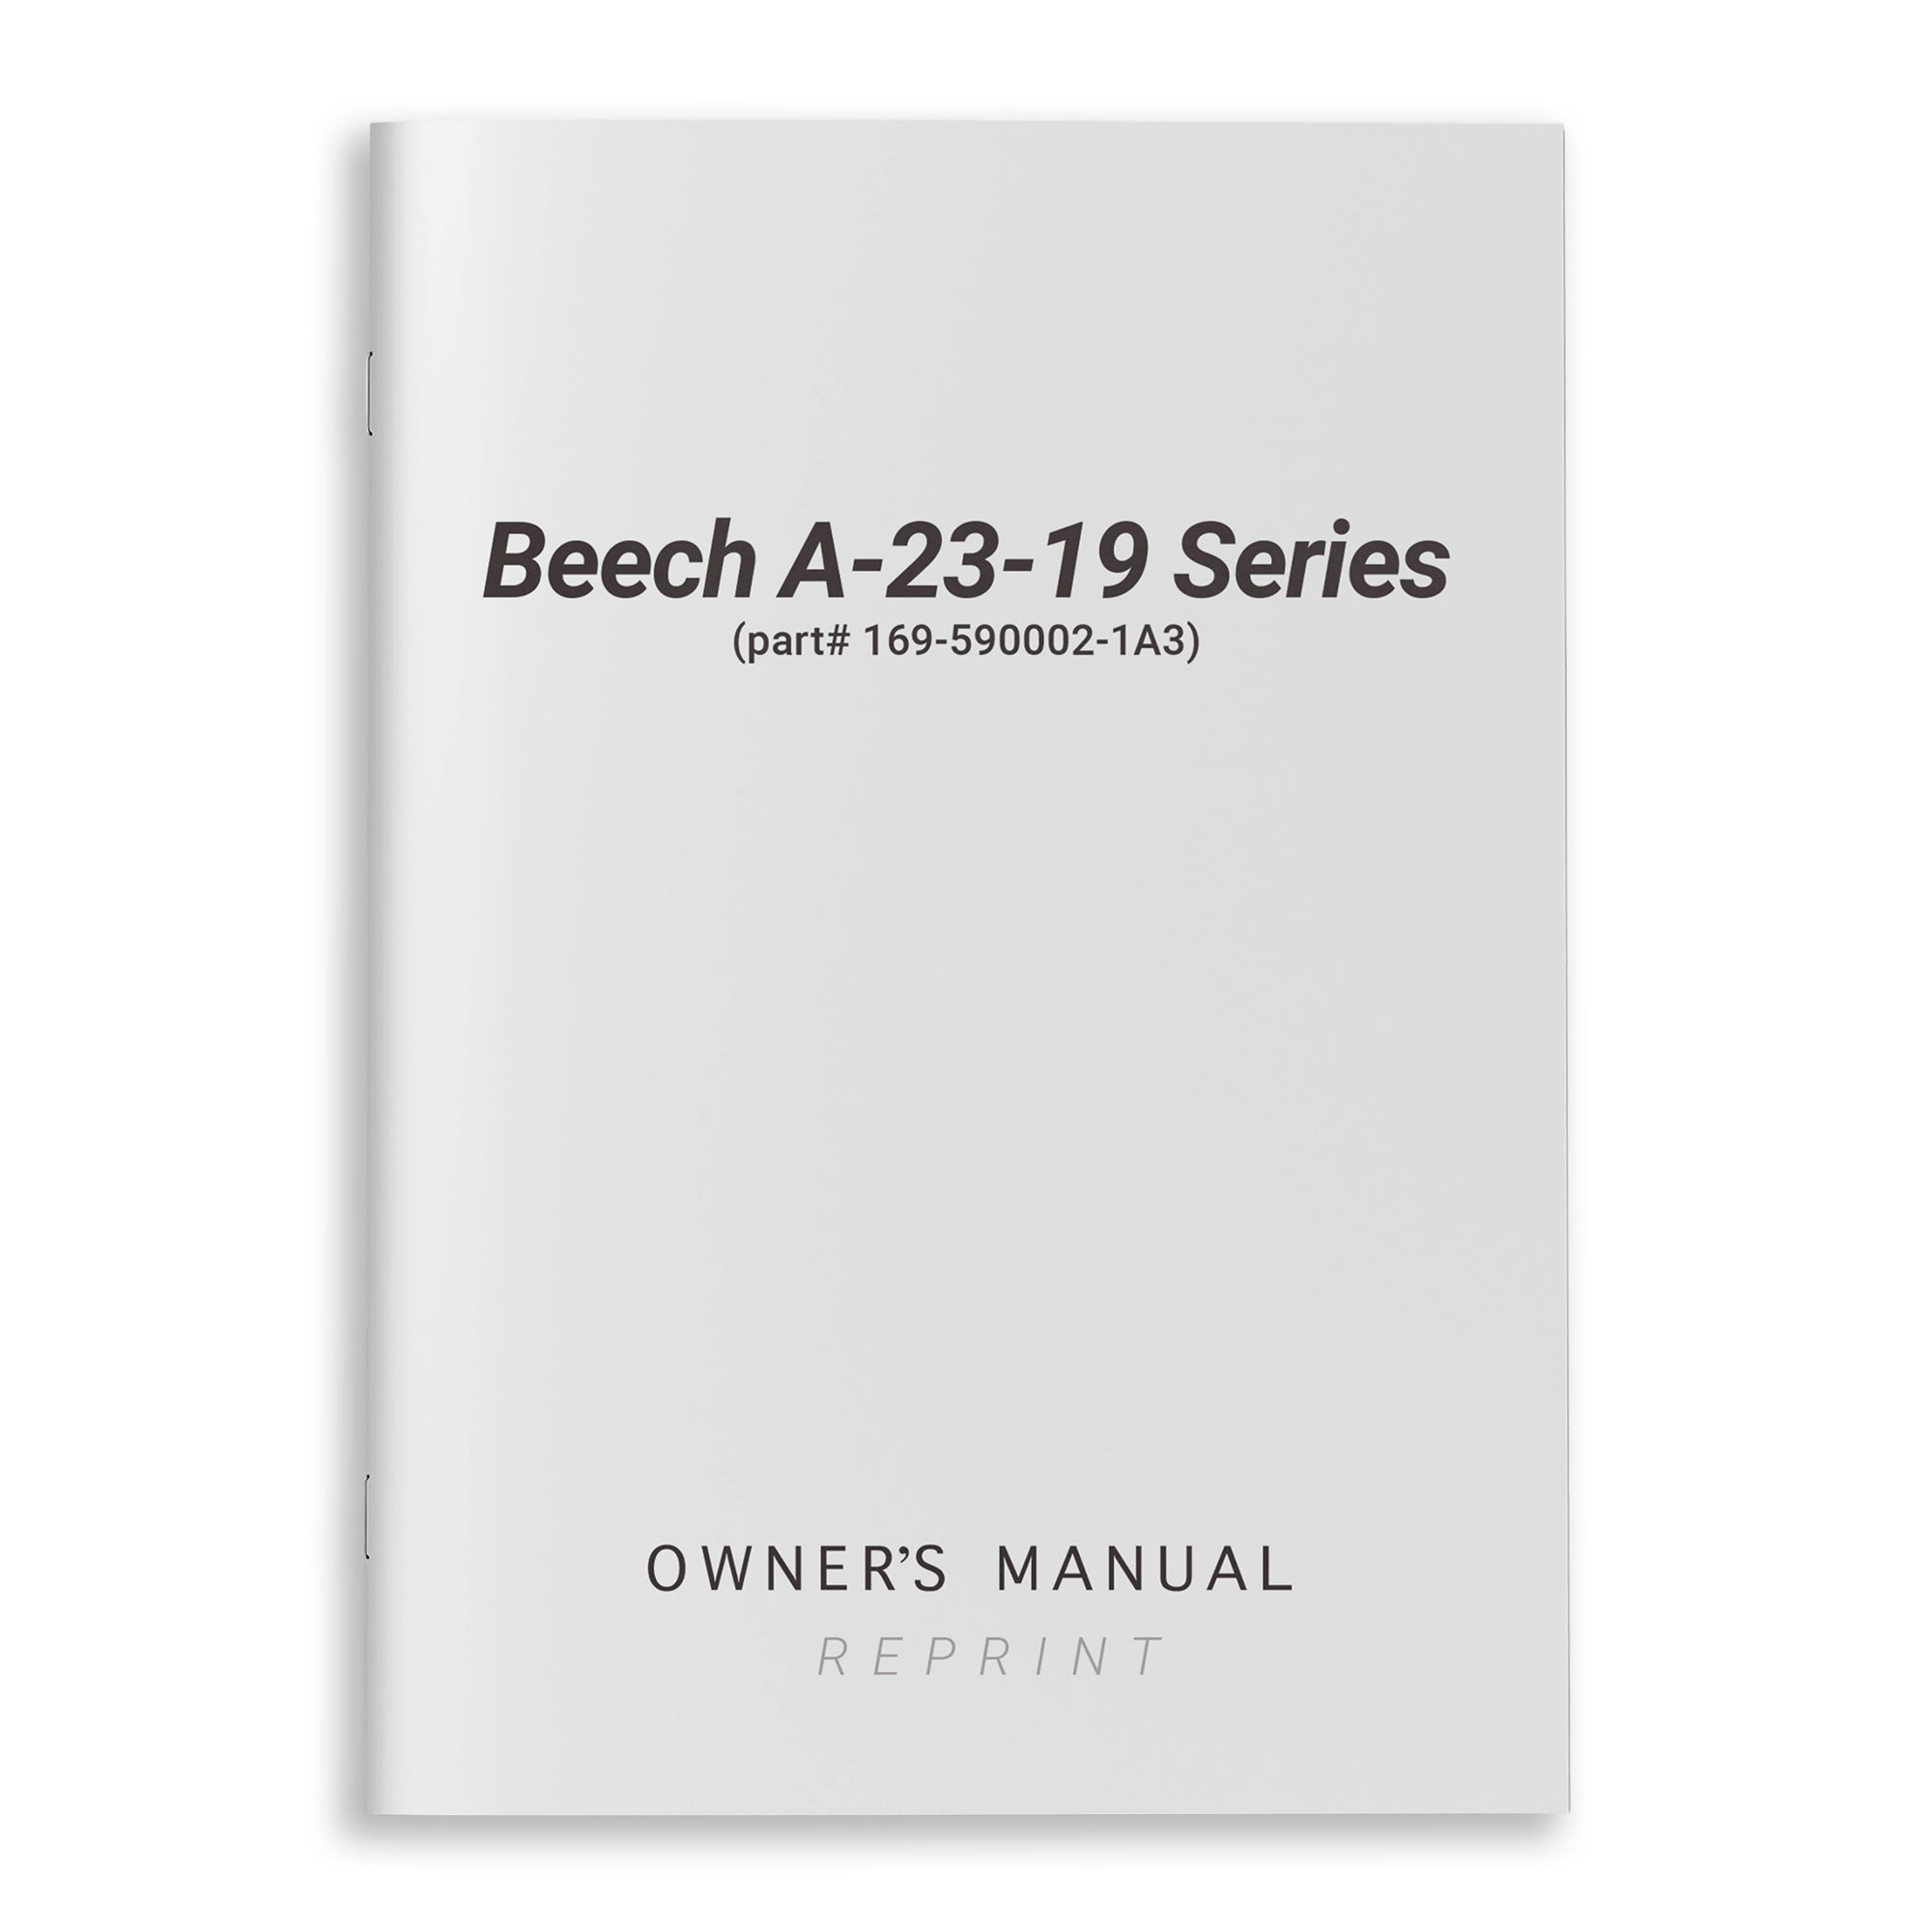 Beech A-23-19 Series Owner's Manual (part# 169-590002-1A3) - PilotMall.com